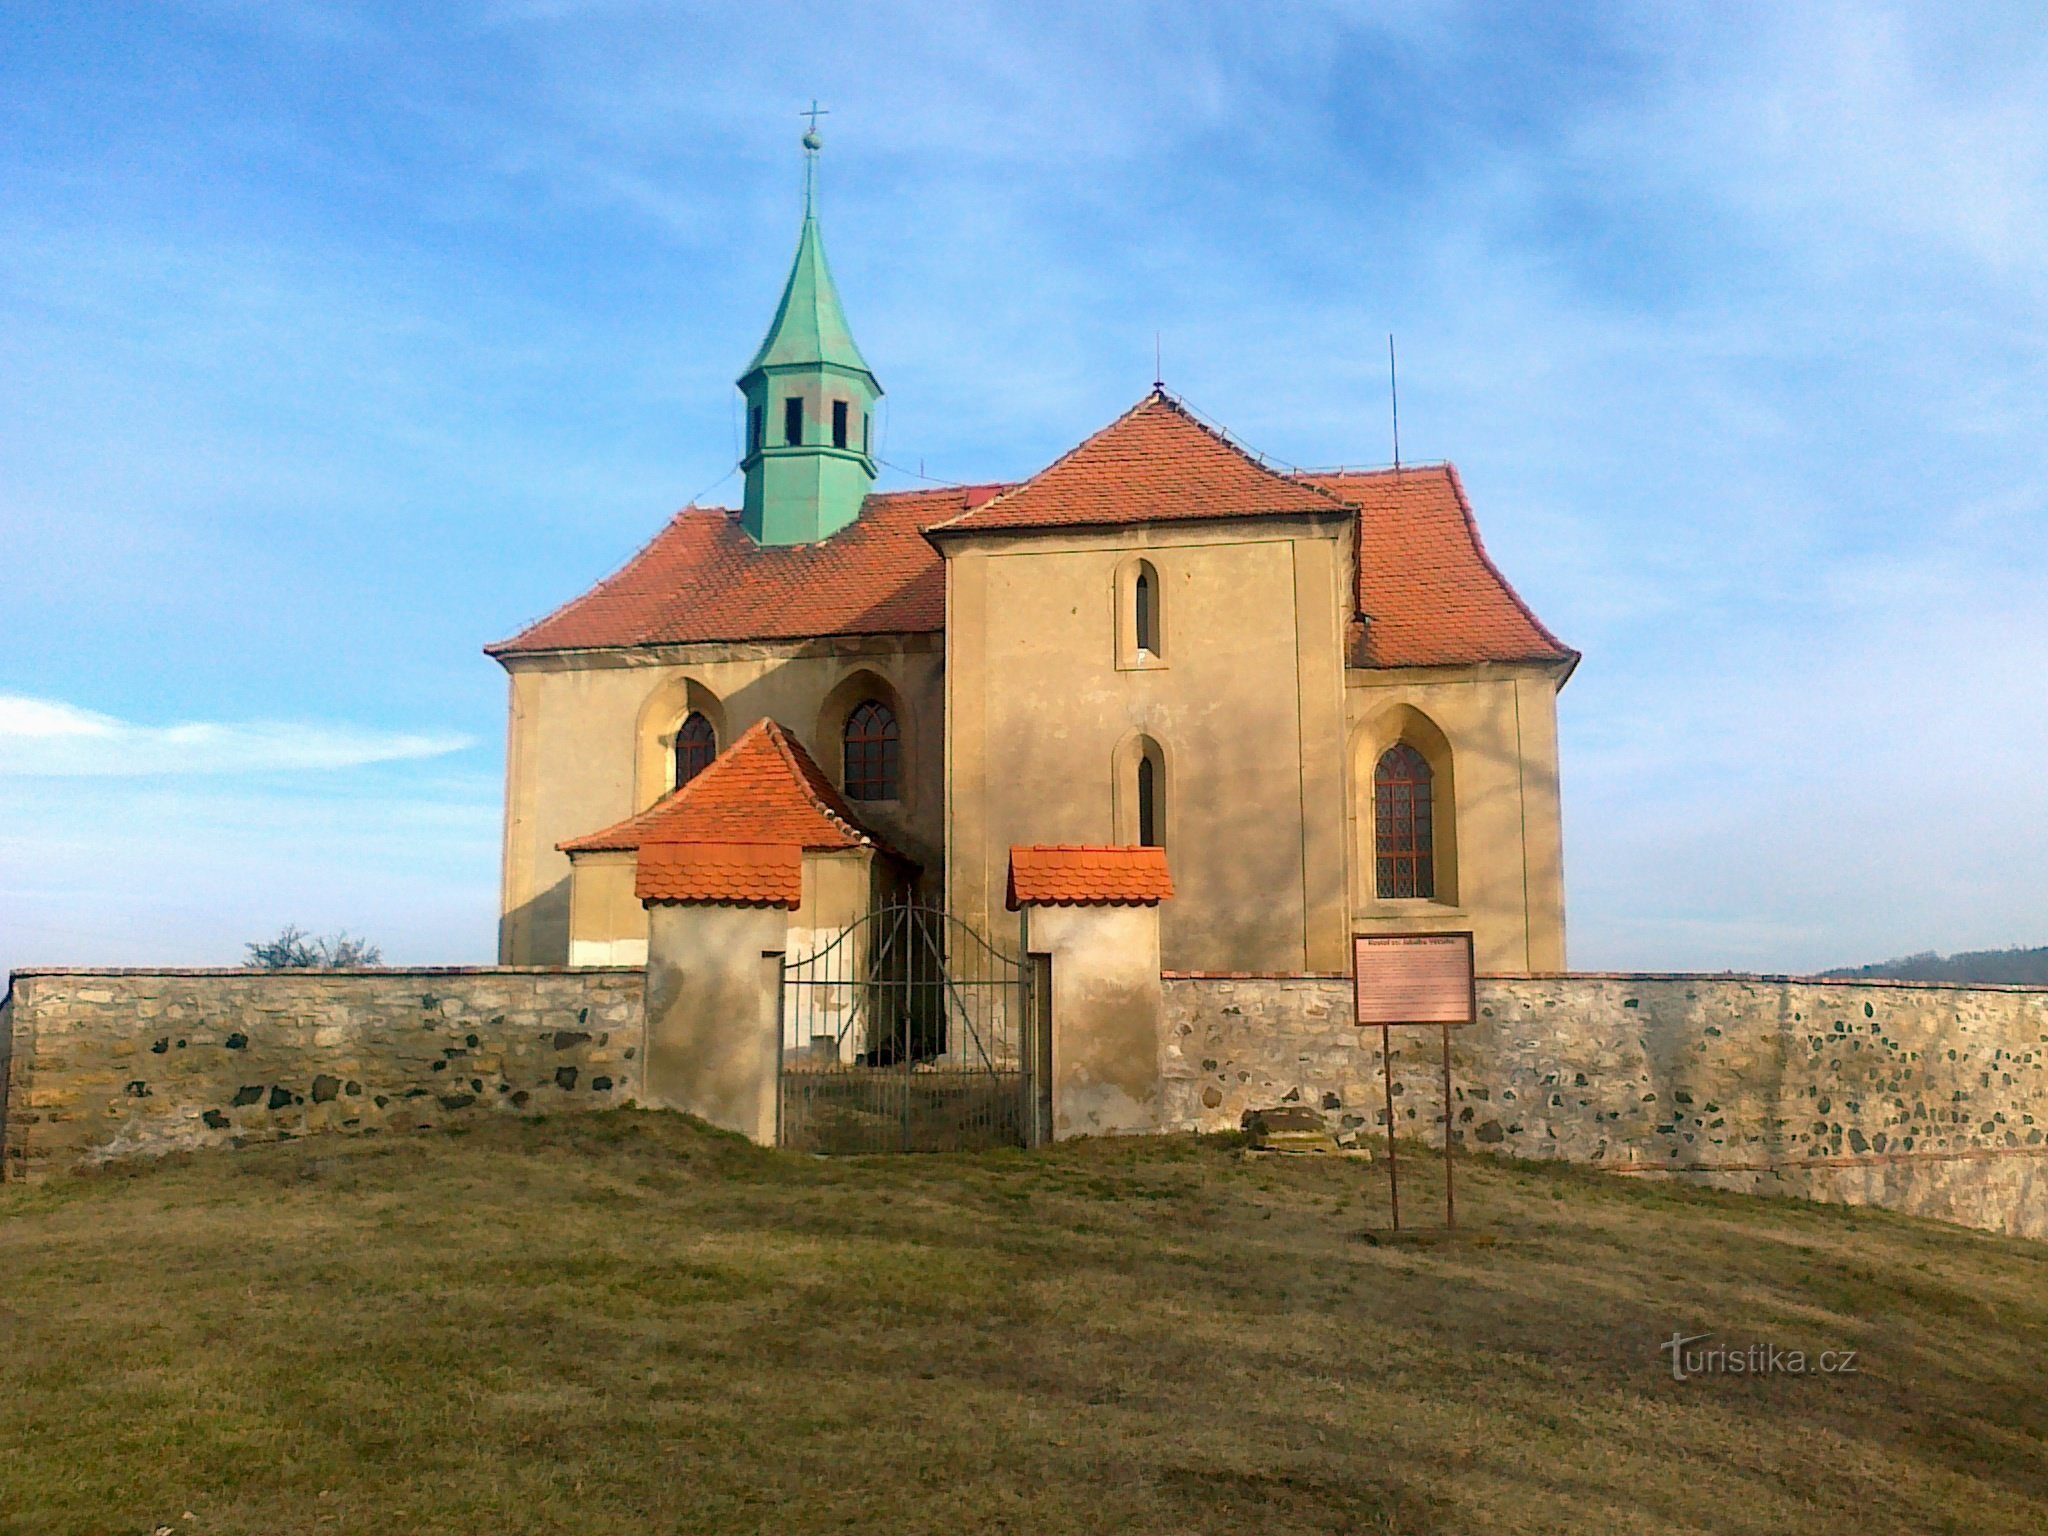 Cerkev sv. Jakuba